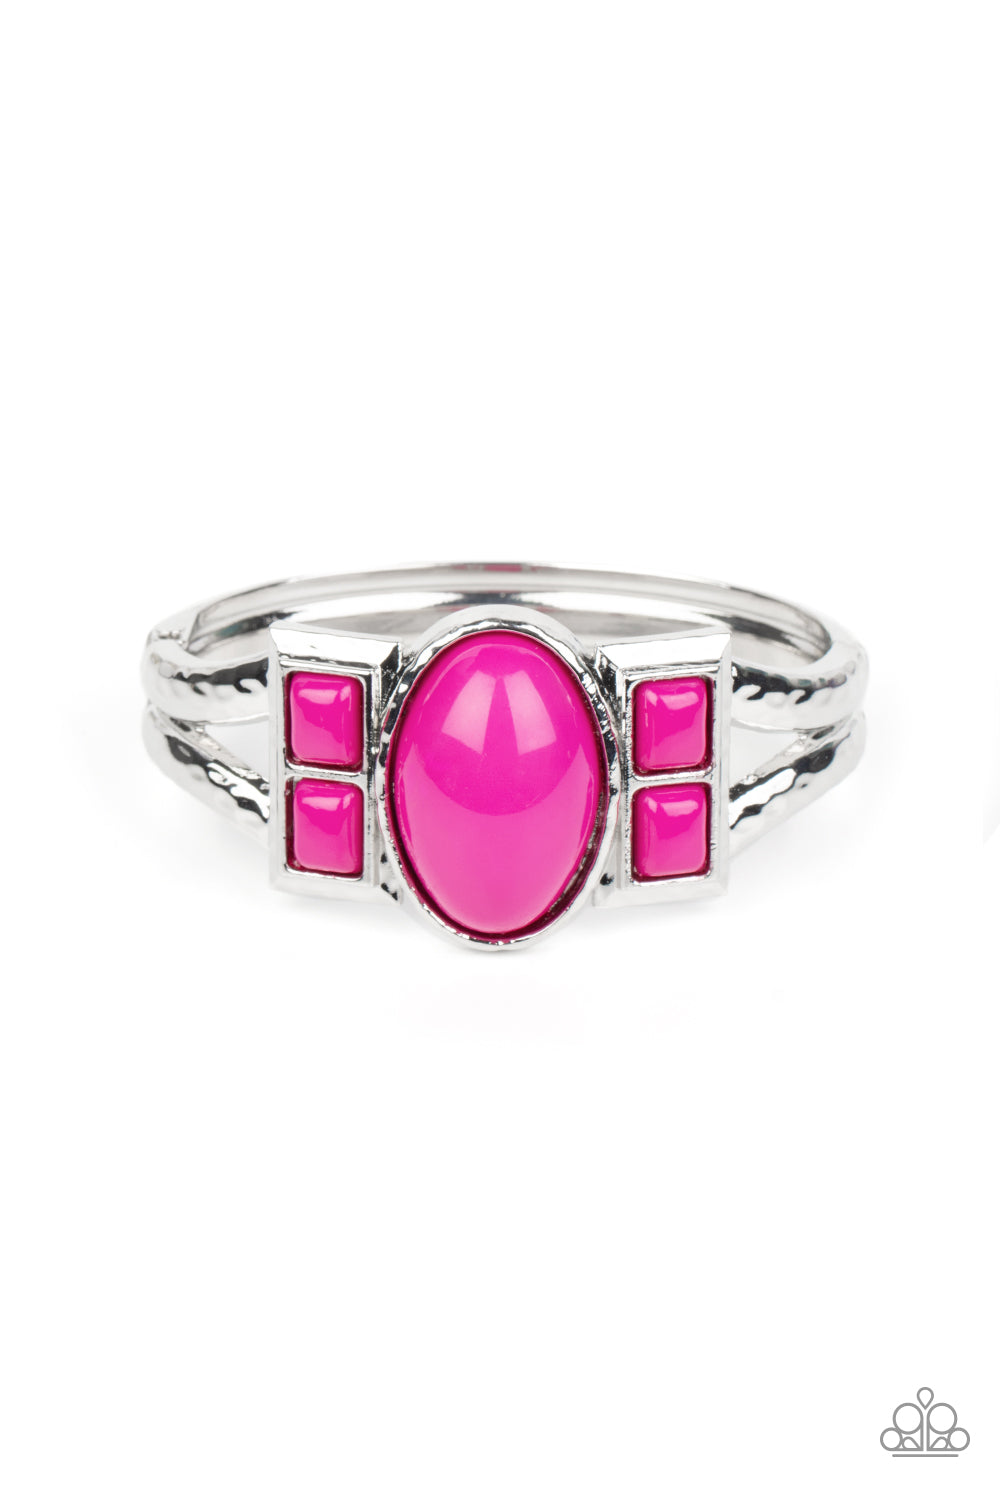 A Touch of Tiki - Pink Bracelet freeshipping - JewLz4u Gemstone Gallery